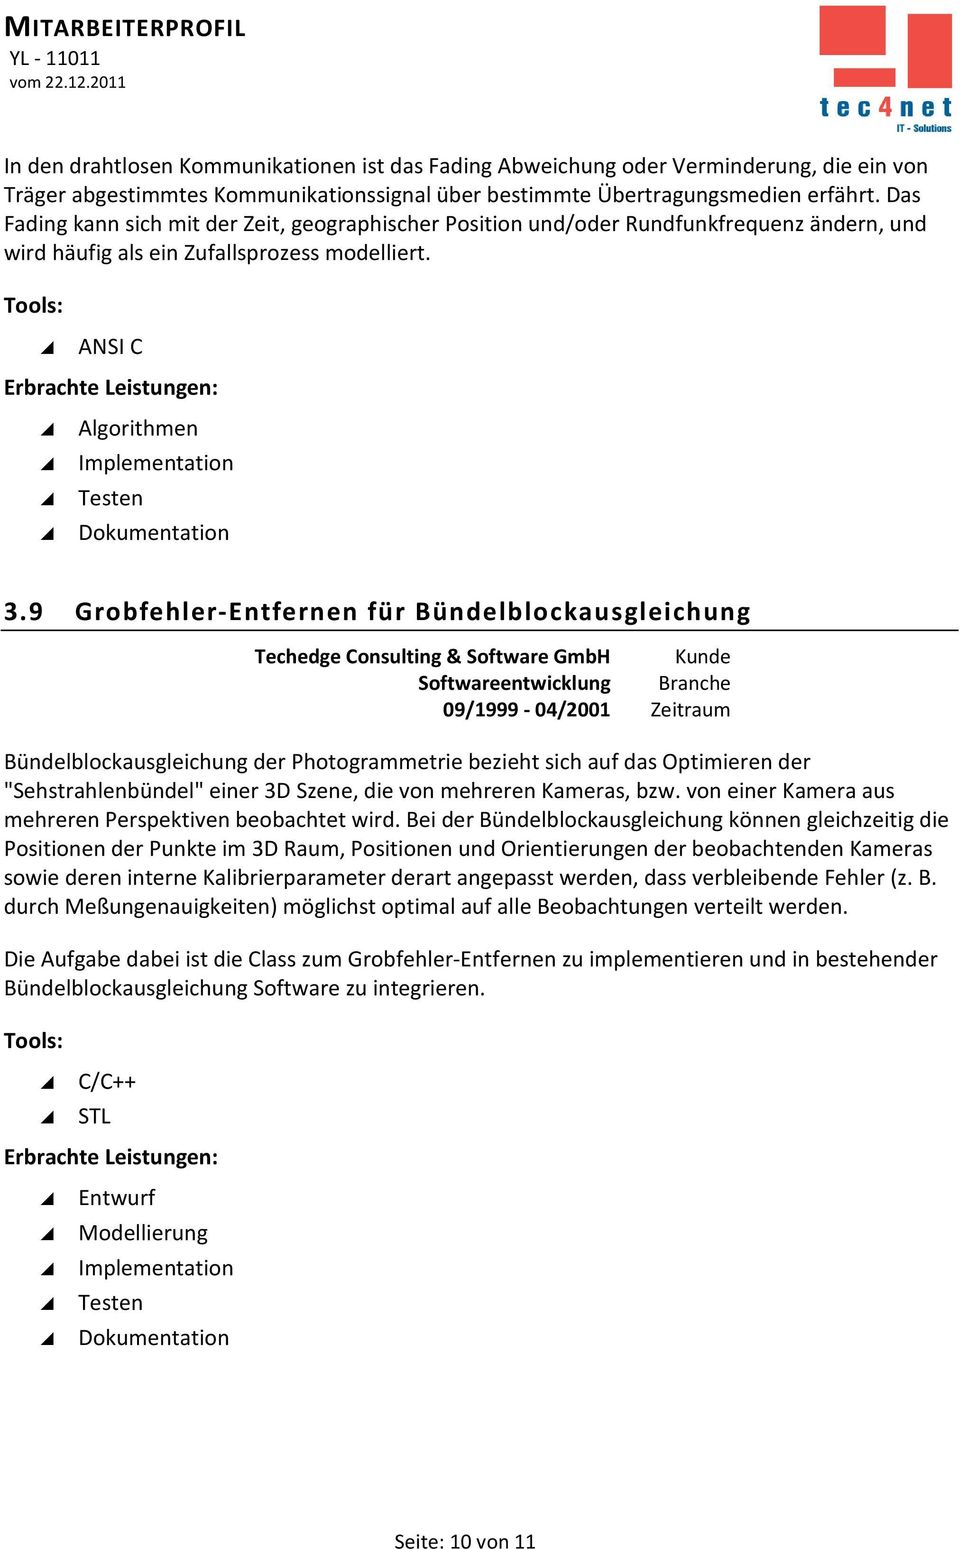 9 Grobfehler-Entfernen für Bündelblockausgleichung Techedge Consulting & Software GmbH Kunde Softwareentwicklung Branche 09/1999-04/2001 Zeitraum Bündelblockausgleichung der Photogrammetrie bezieht